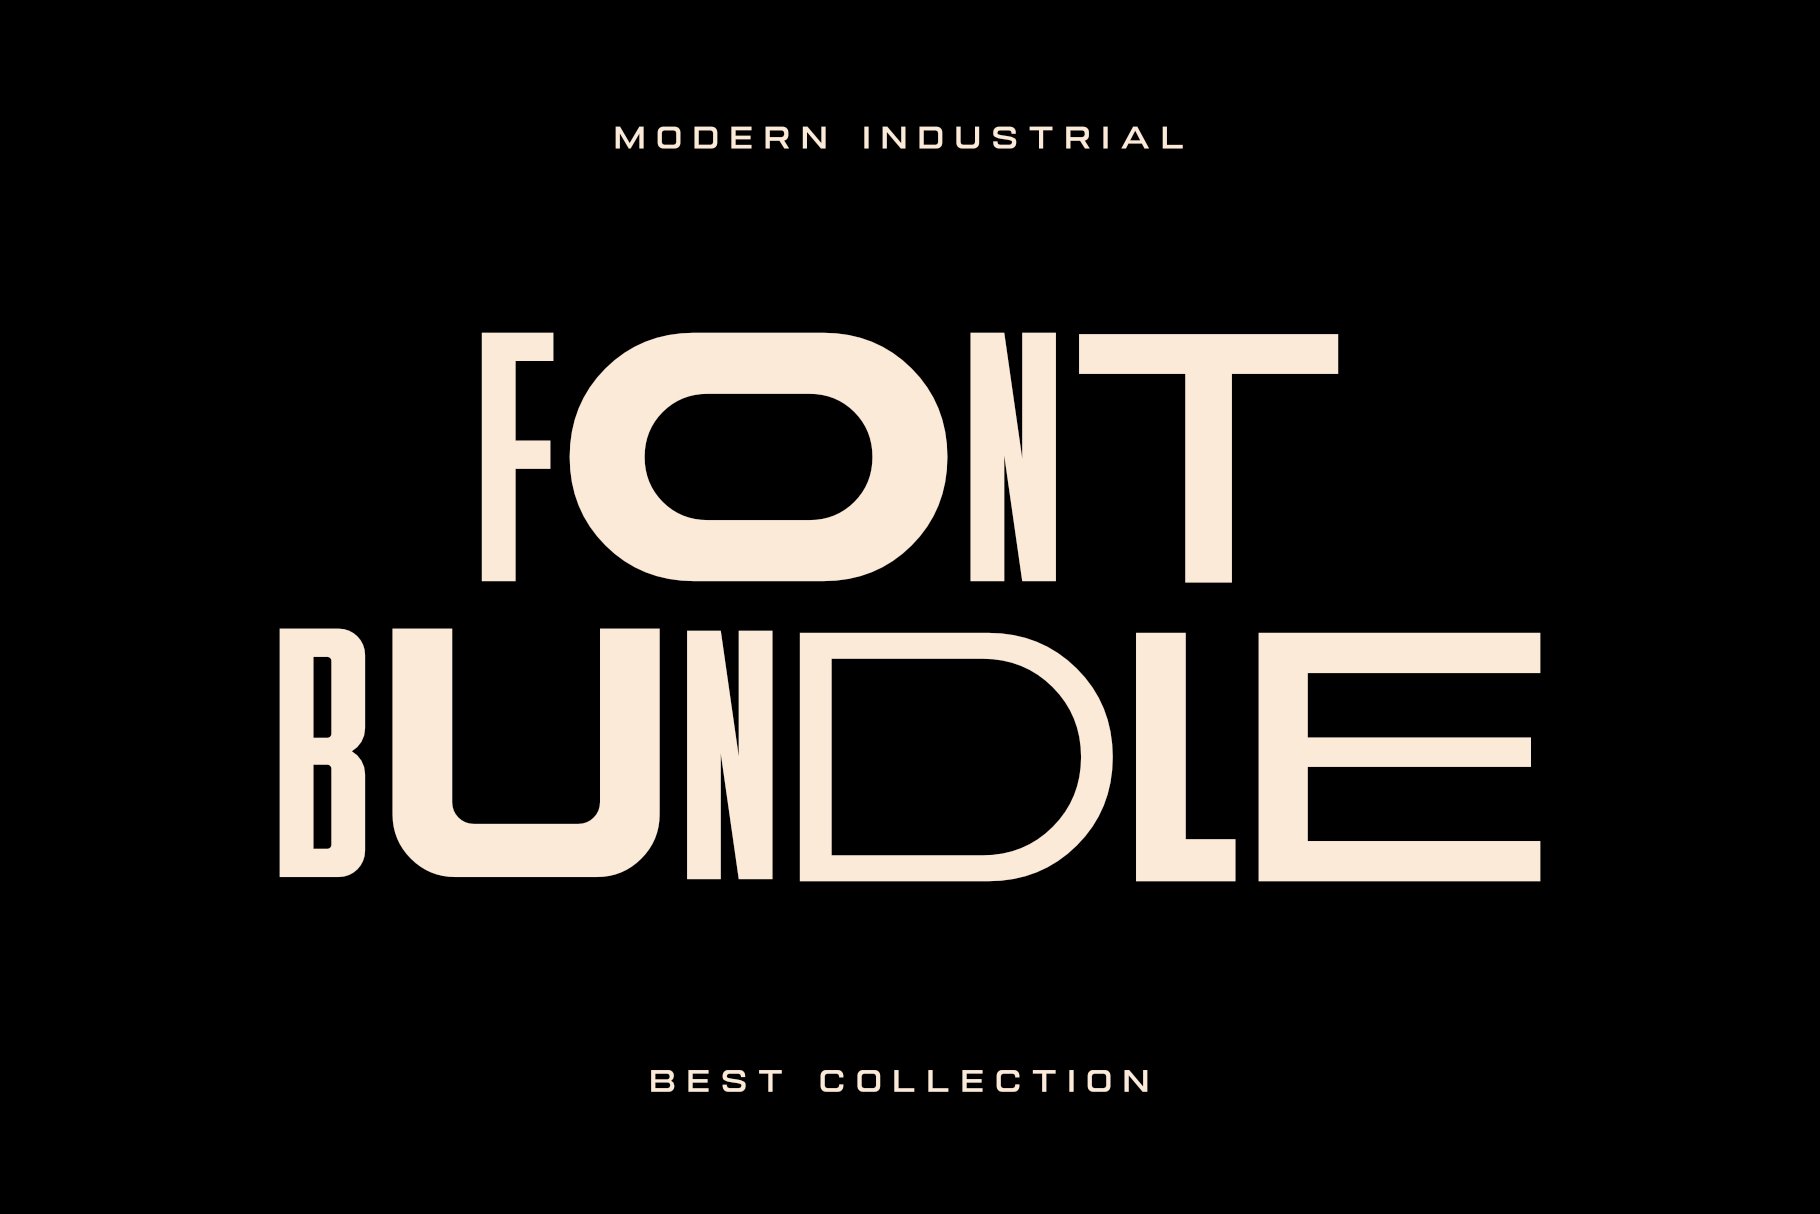 Modern Industrial Font Bundle cover image.